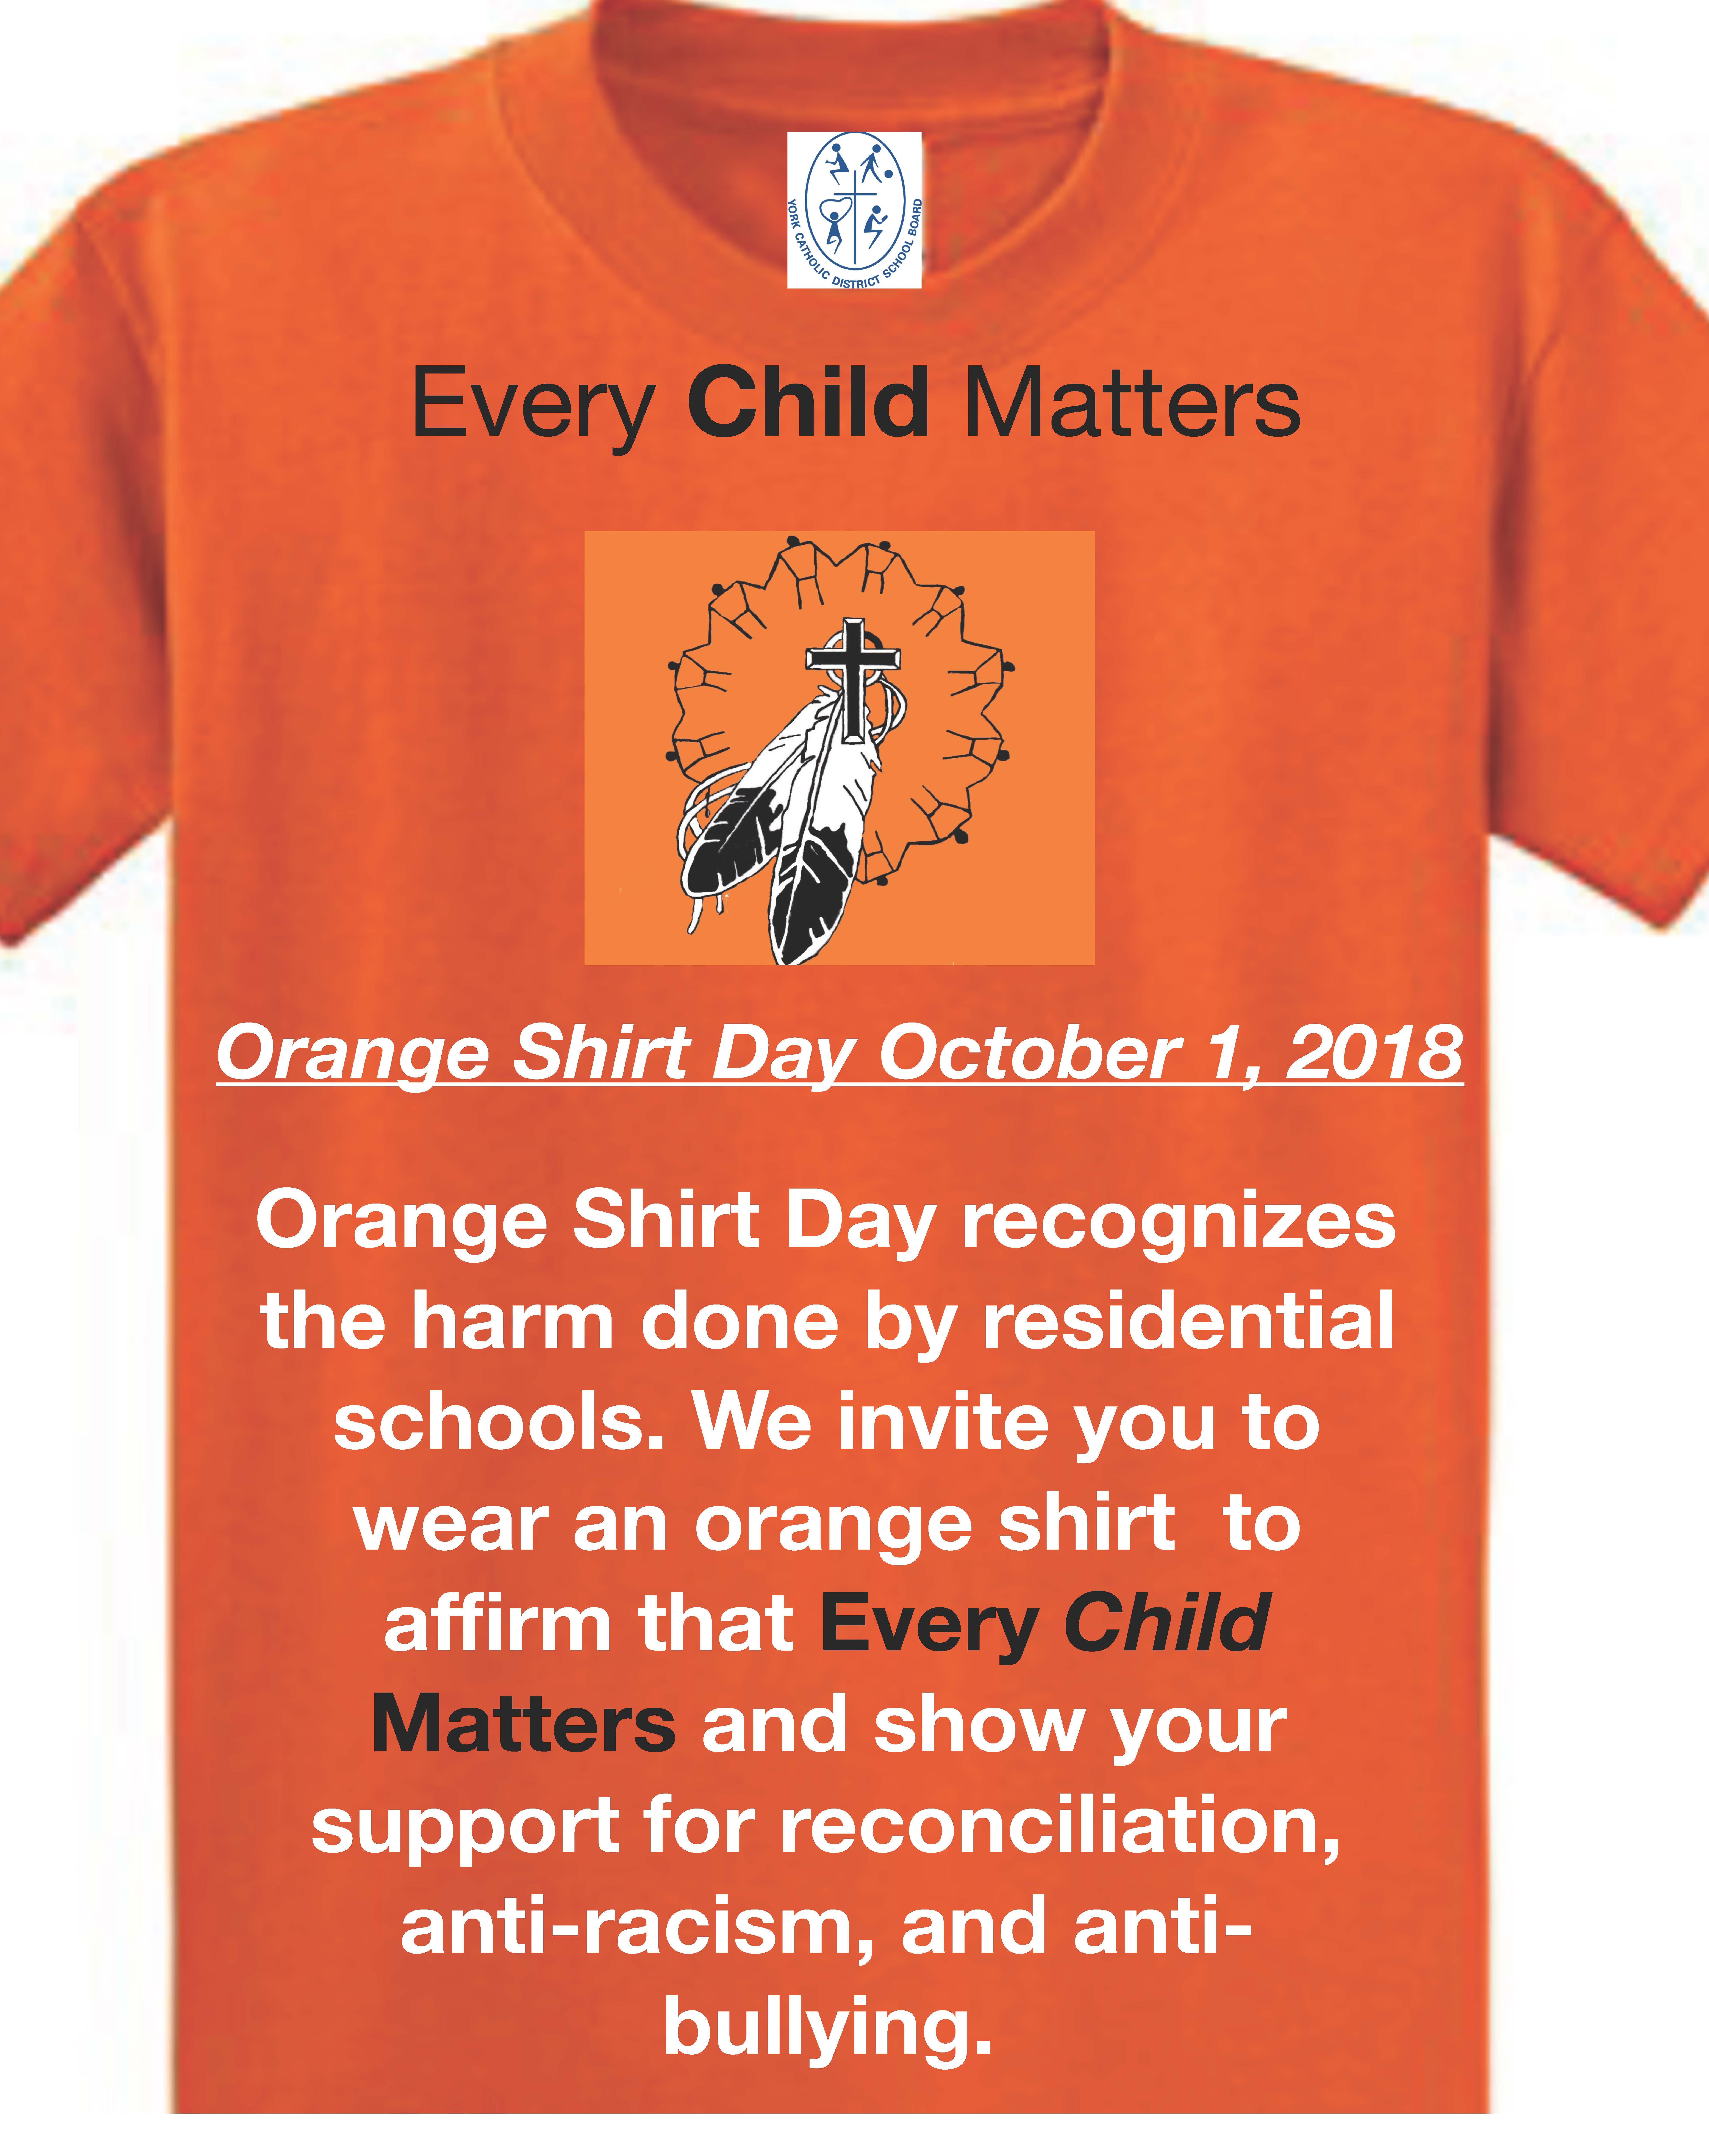 September 30 is Orange Shirt Day!